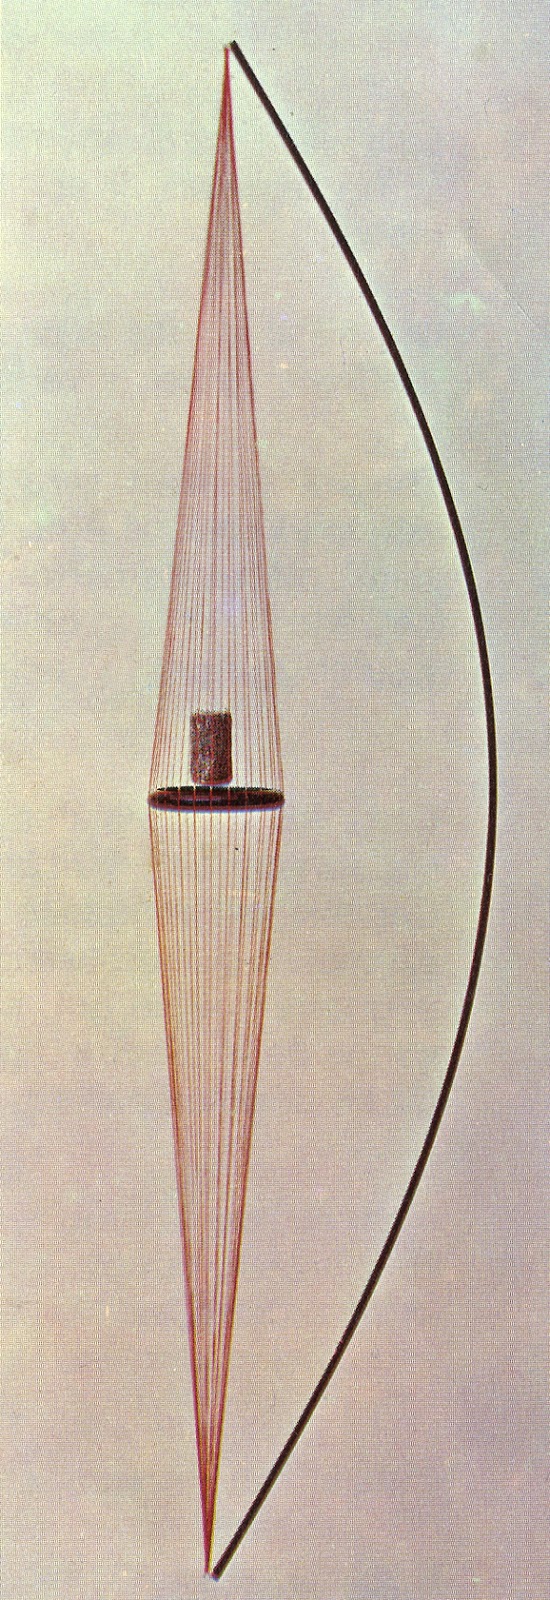 vintage string mobile fil fils années 70 1973